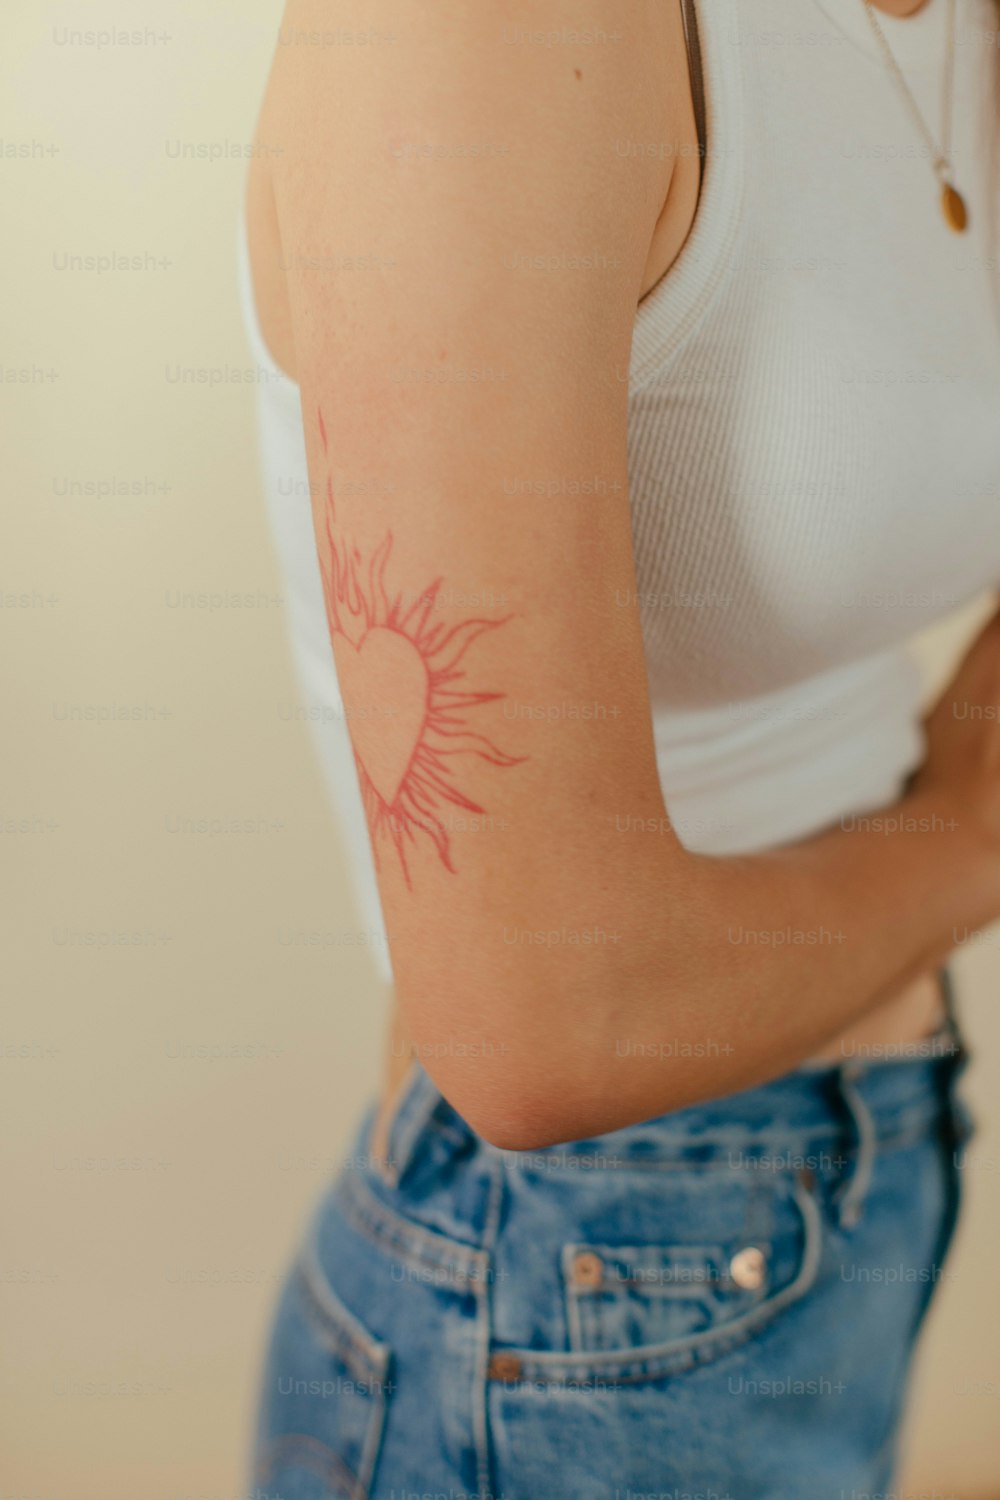 eine Person mit einem Tattoo auf dem Arm